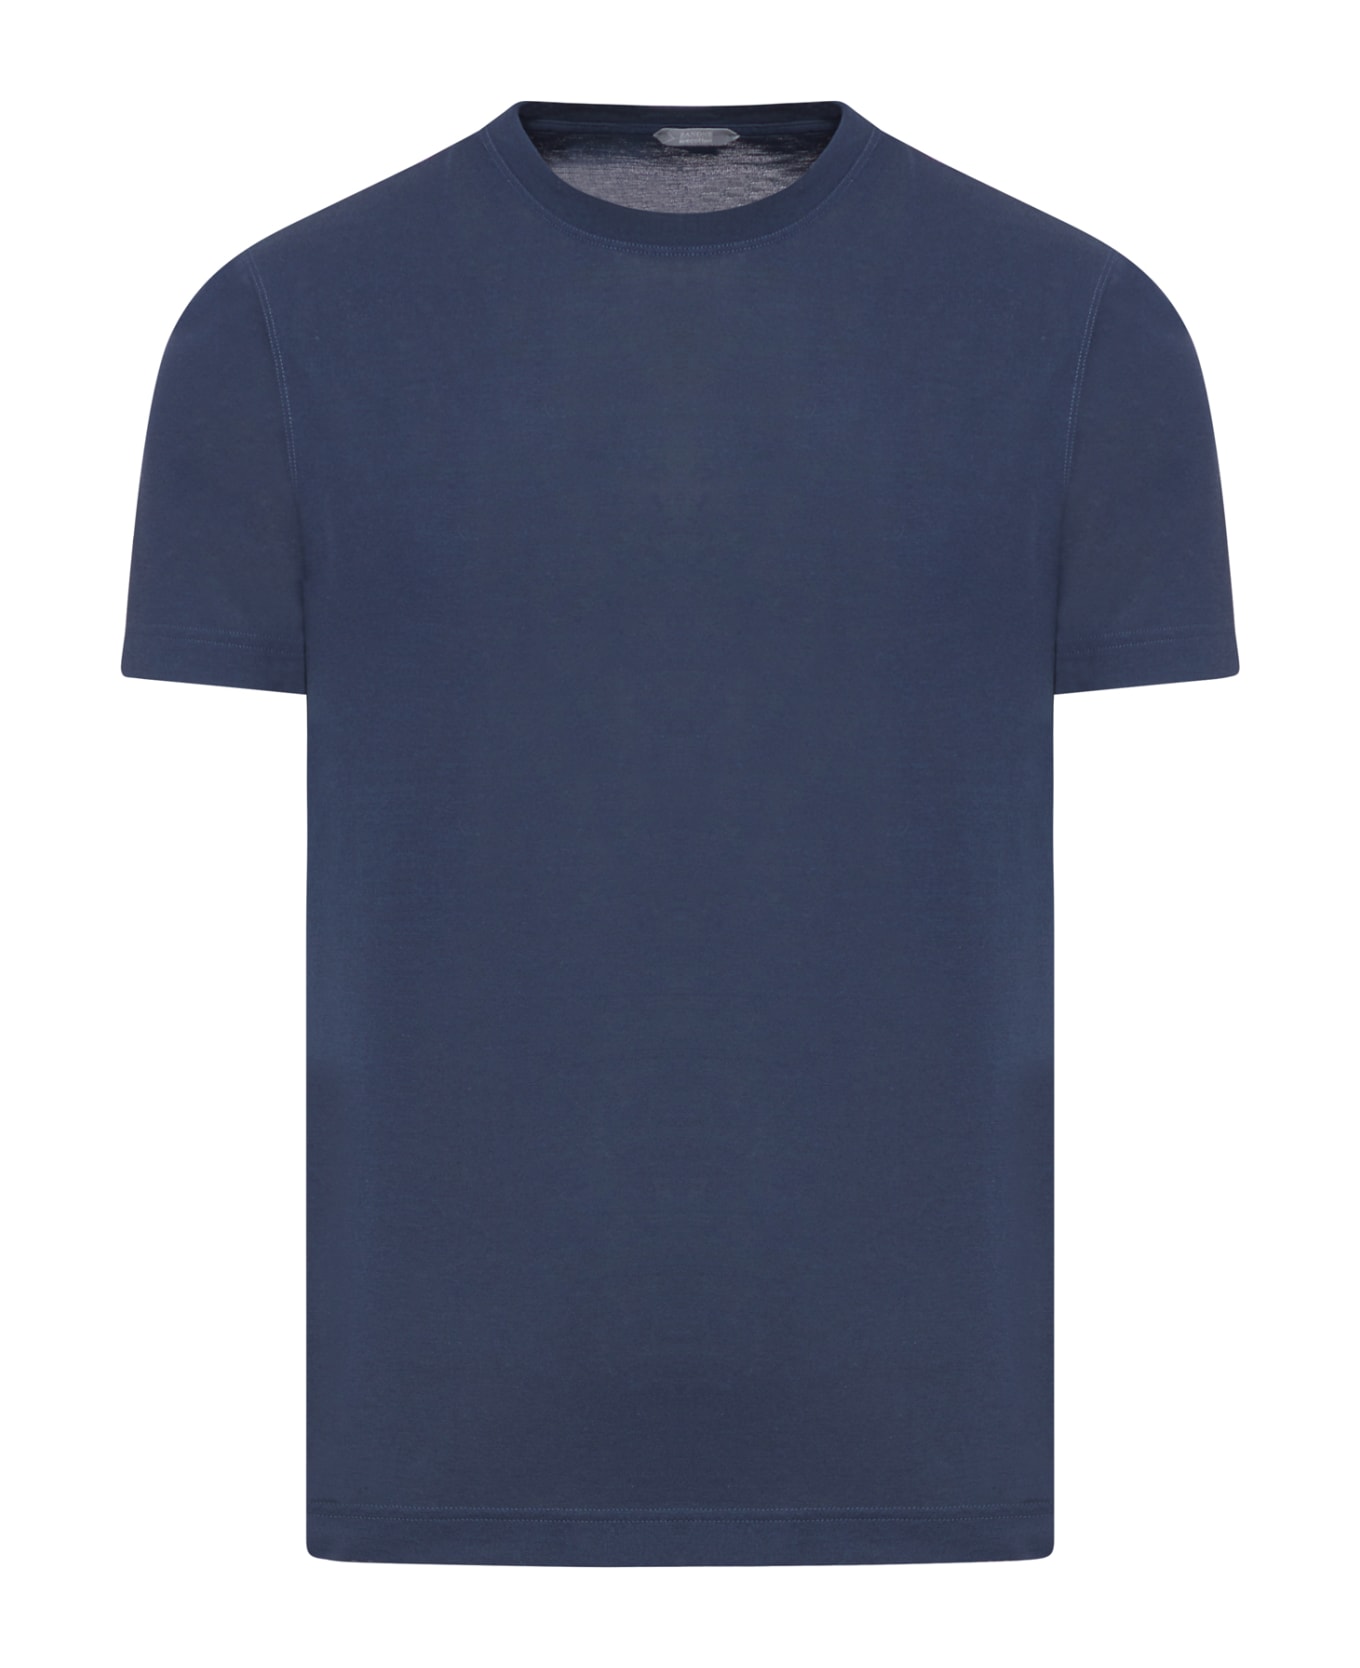 Zanone Tshirt Ss - Blue